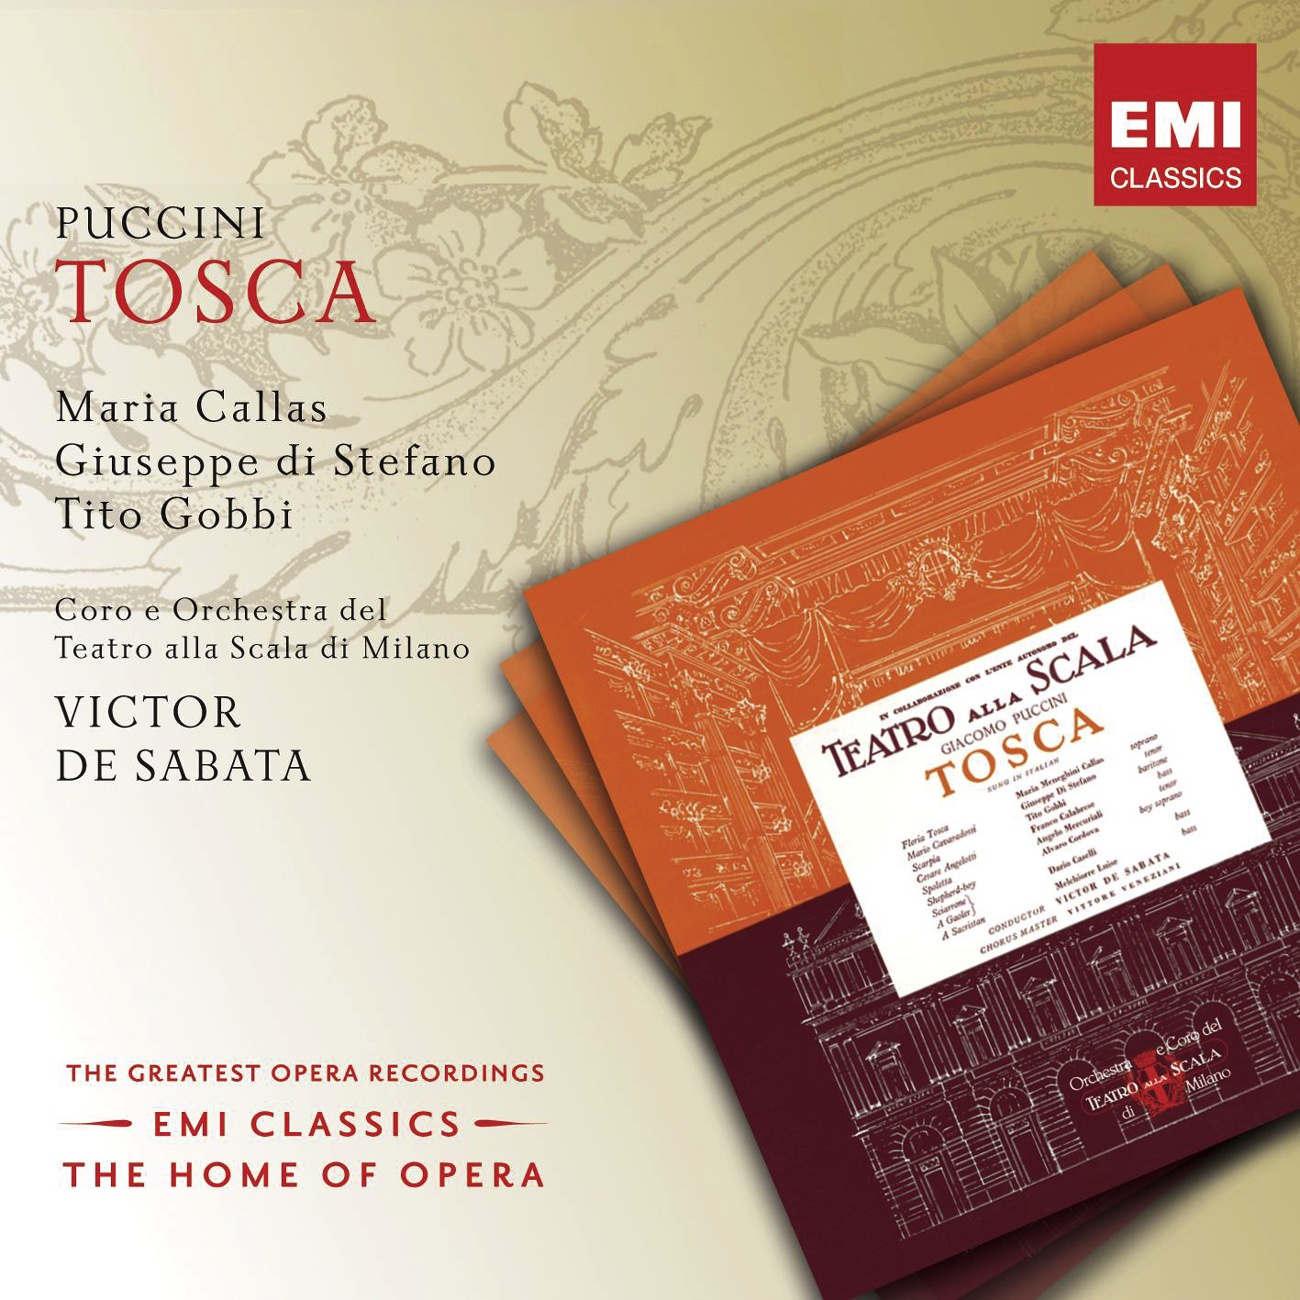 Tosca 2002 Digital Remaster, ACT ONE: Gente la dentro! Cavaradossi Angelotti Tosca